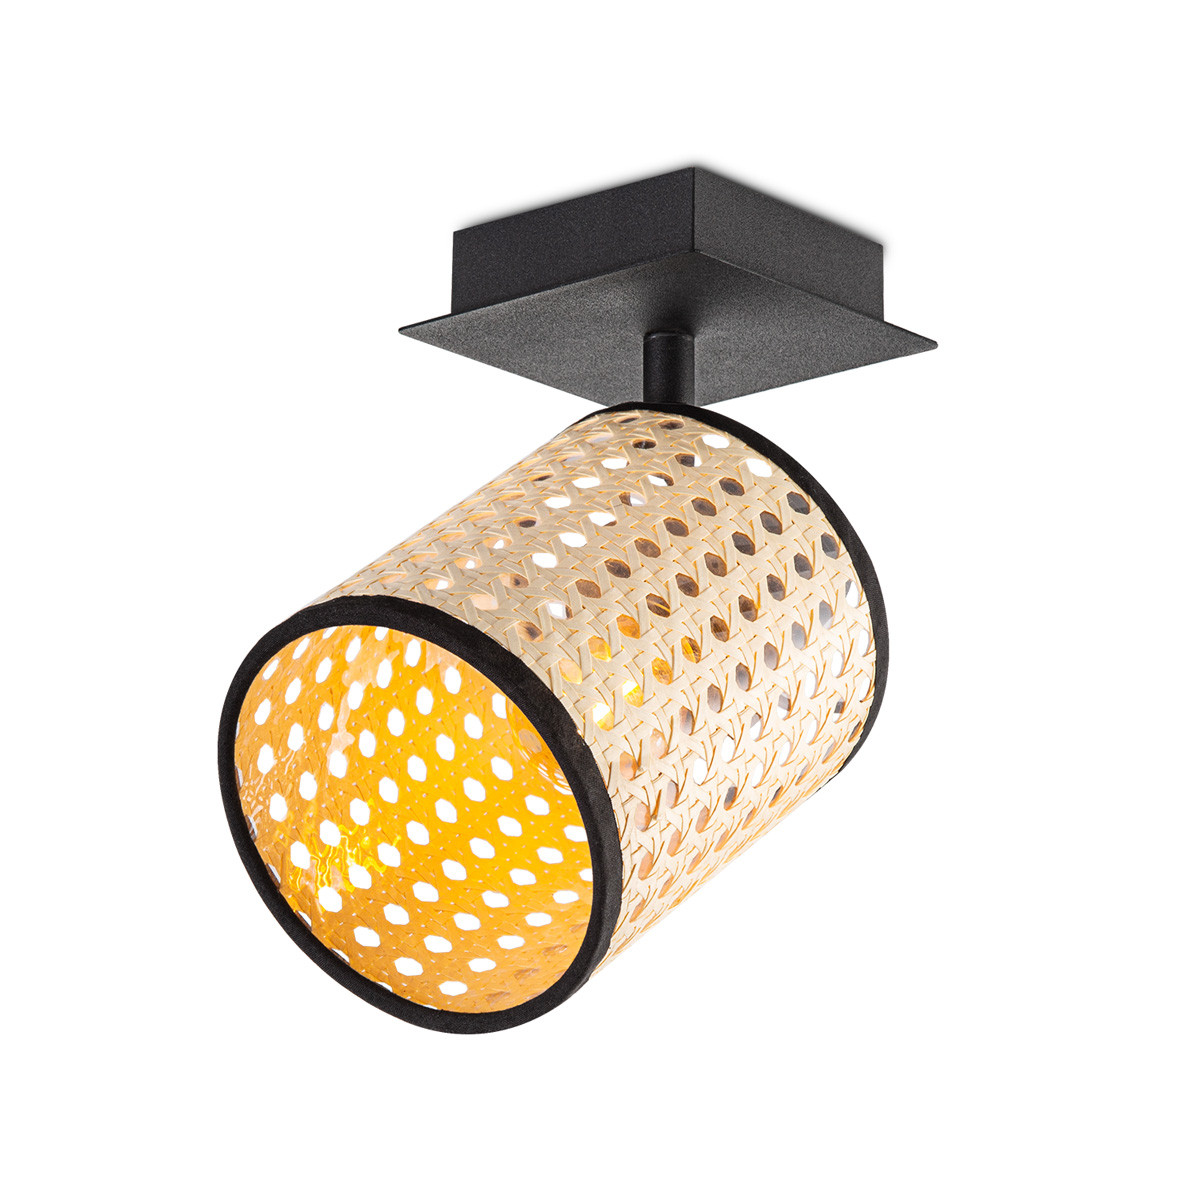 Landelijke LED Wandspot Dean rotan, 10/10/22.3cm, Rotan, geschikt voor plafonniere lampenkap gemaakt van rotan, E27 lichtbron